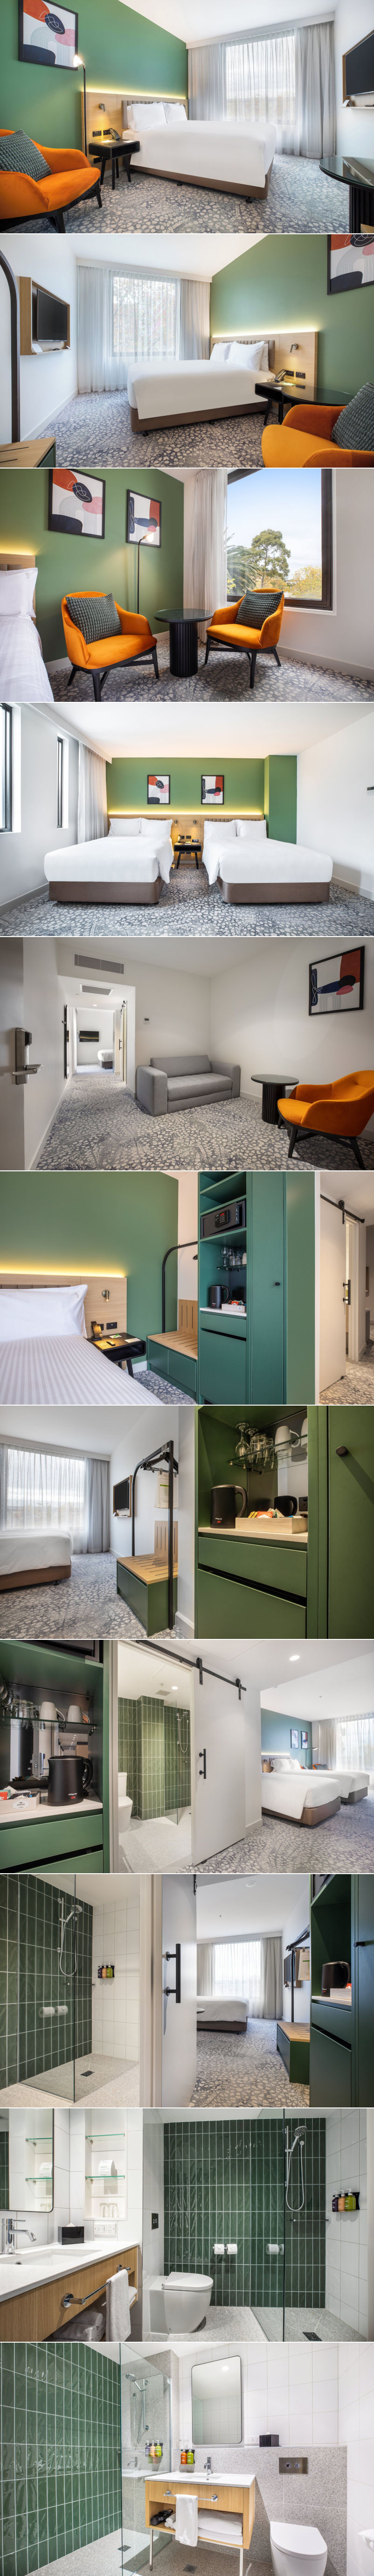 Holiday Inn Dandenong - Rooms